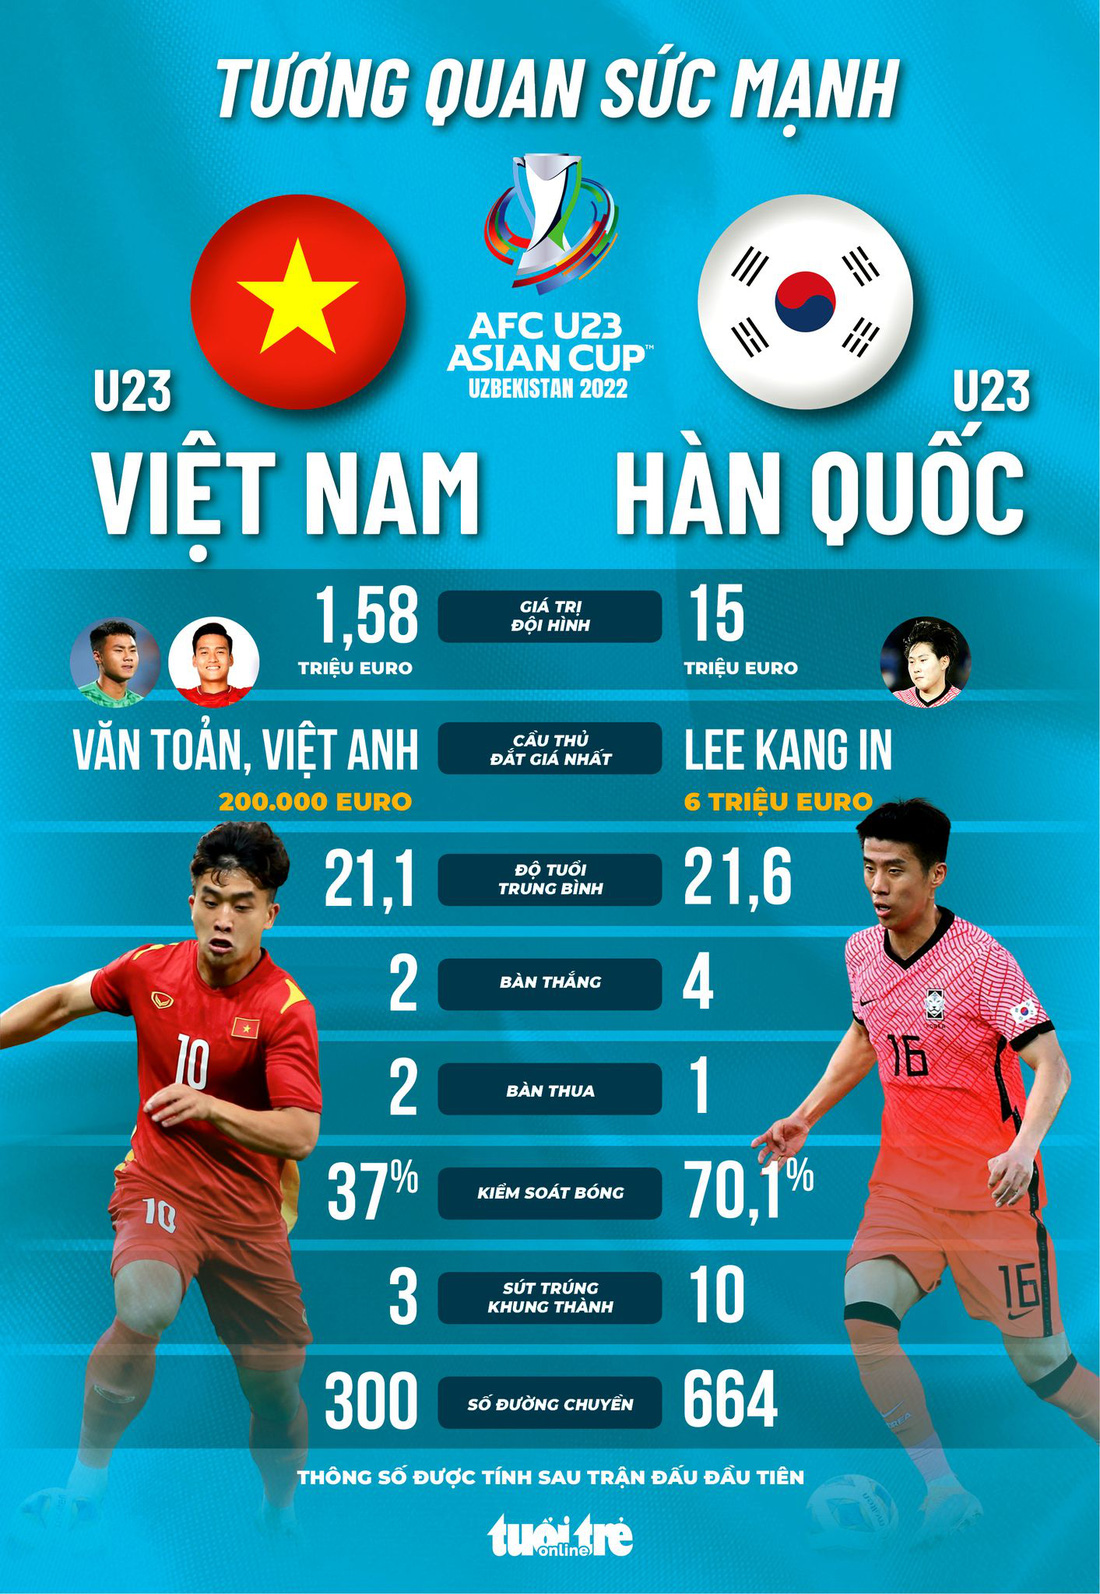 Tương quan sức mạnh giữa U23 Việt Nam và Hàn Quốc - Ảnh 1.